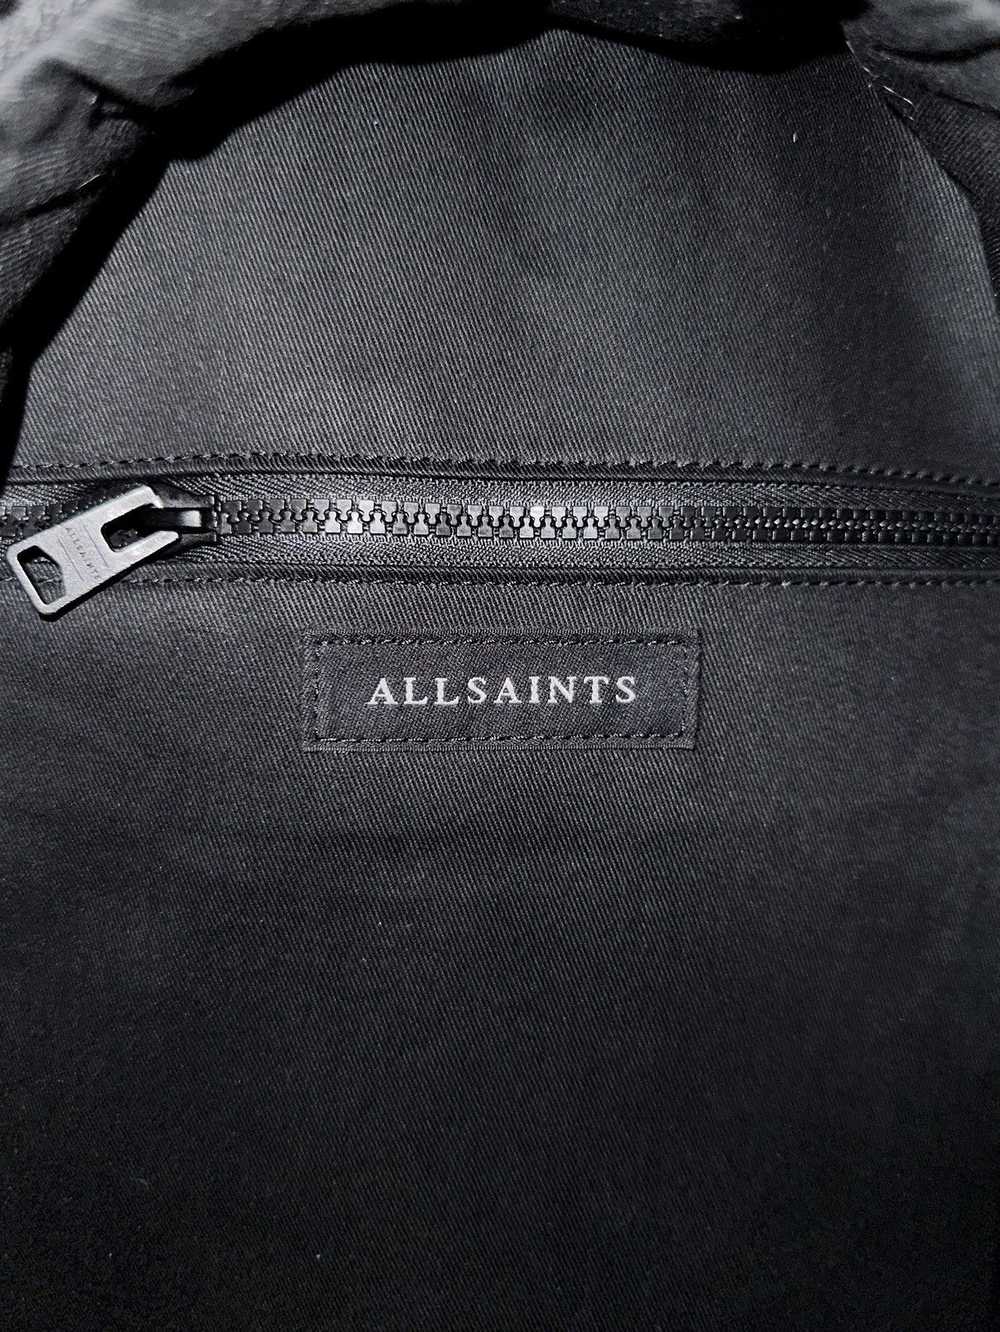 Allsaints Arena Backpack - image 6